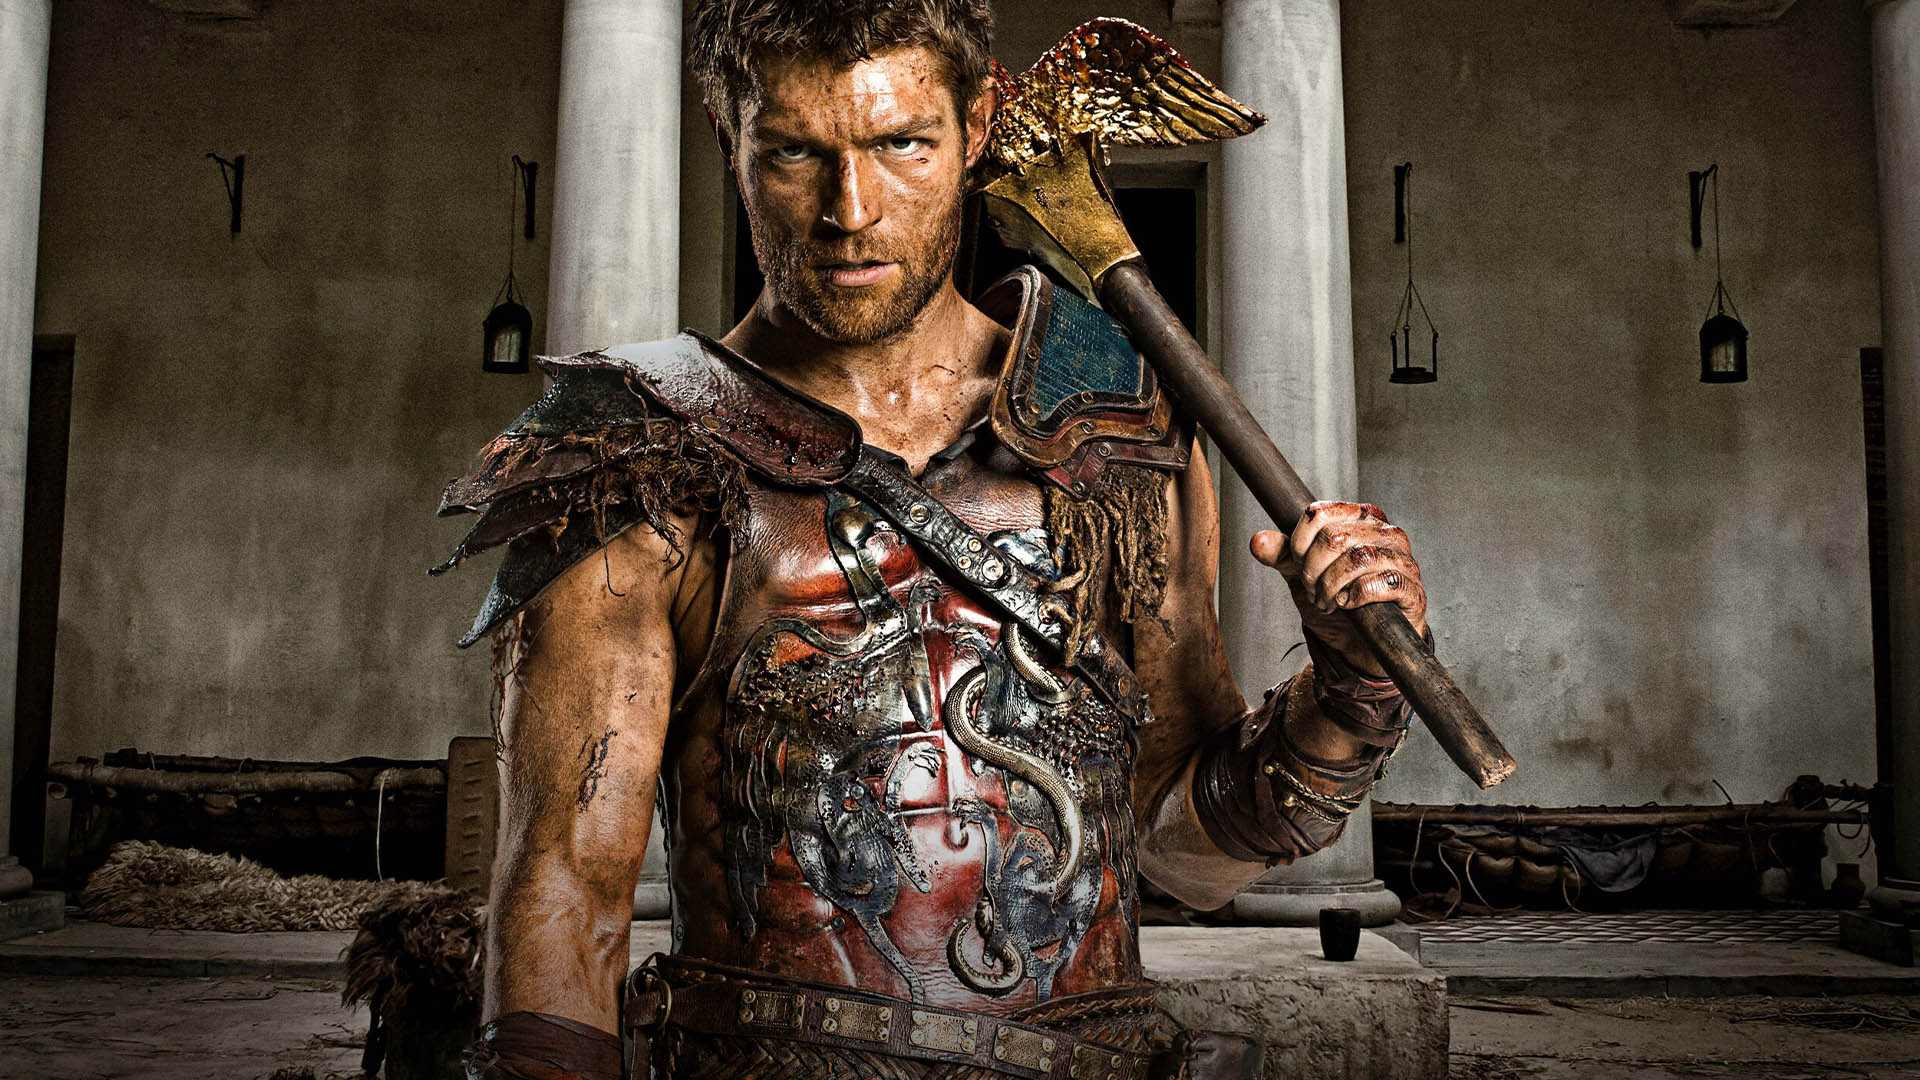 شخصیت اسپارتاکوس با بازی اندی ویتفیلد در سریال Spartacus با تبری در دست